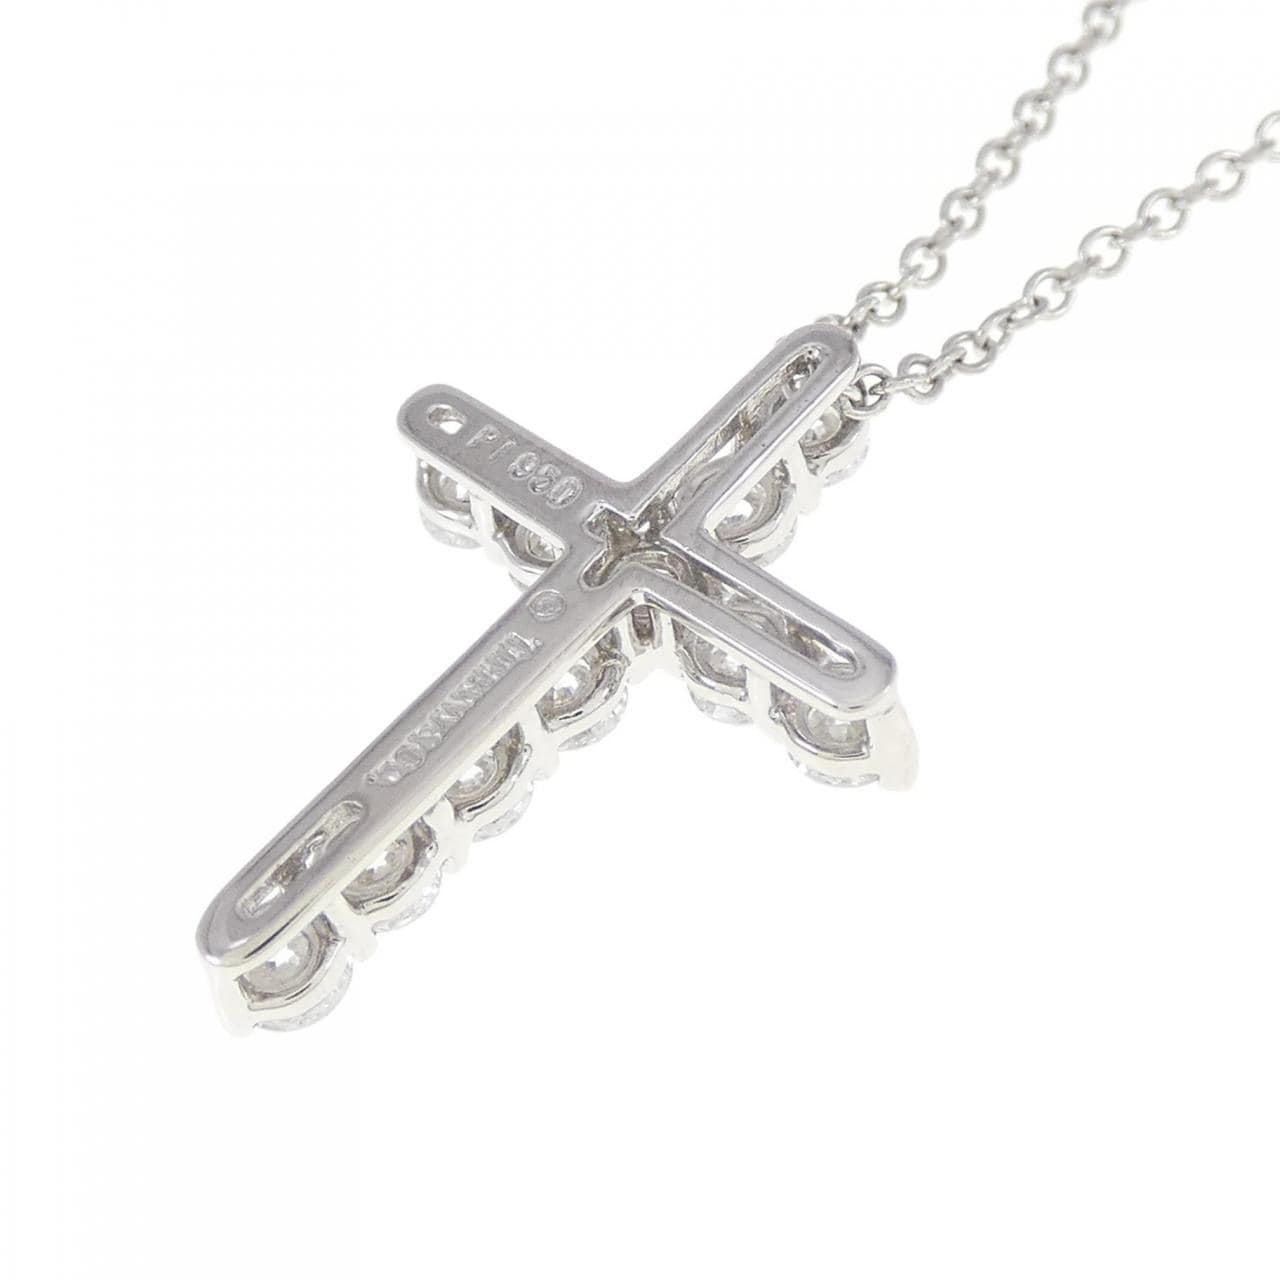 TIFFANY small cross necklace